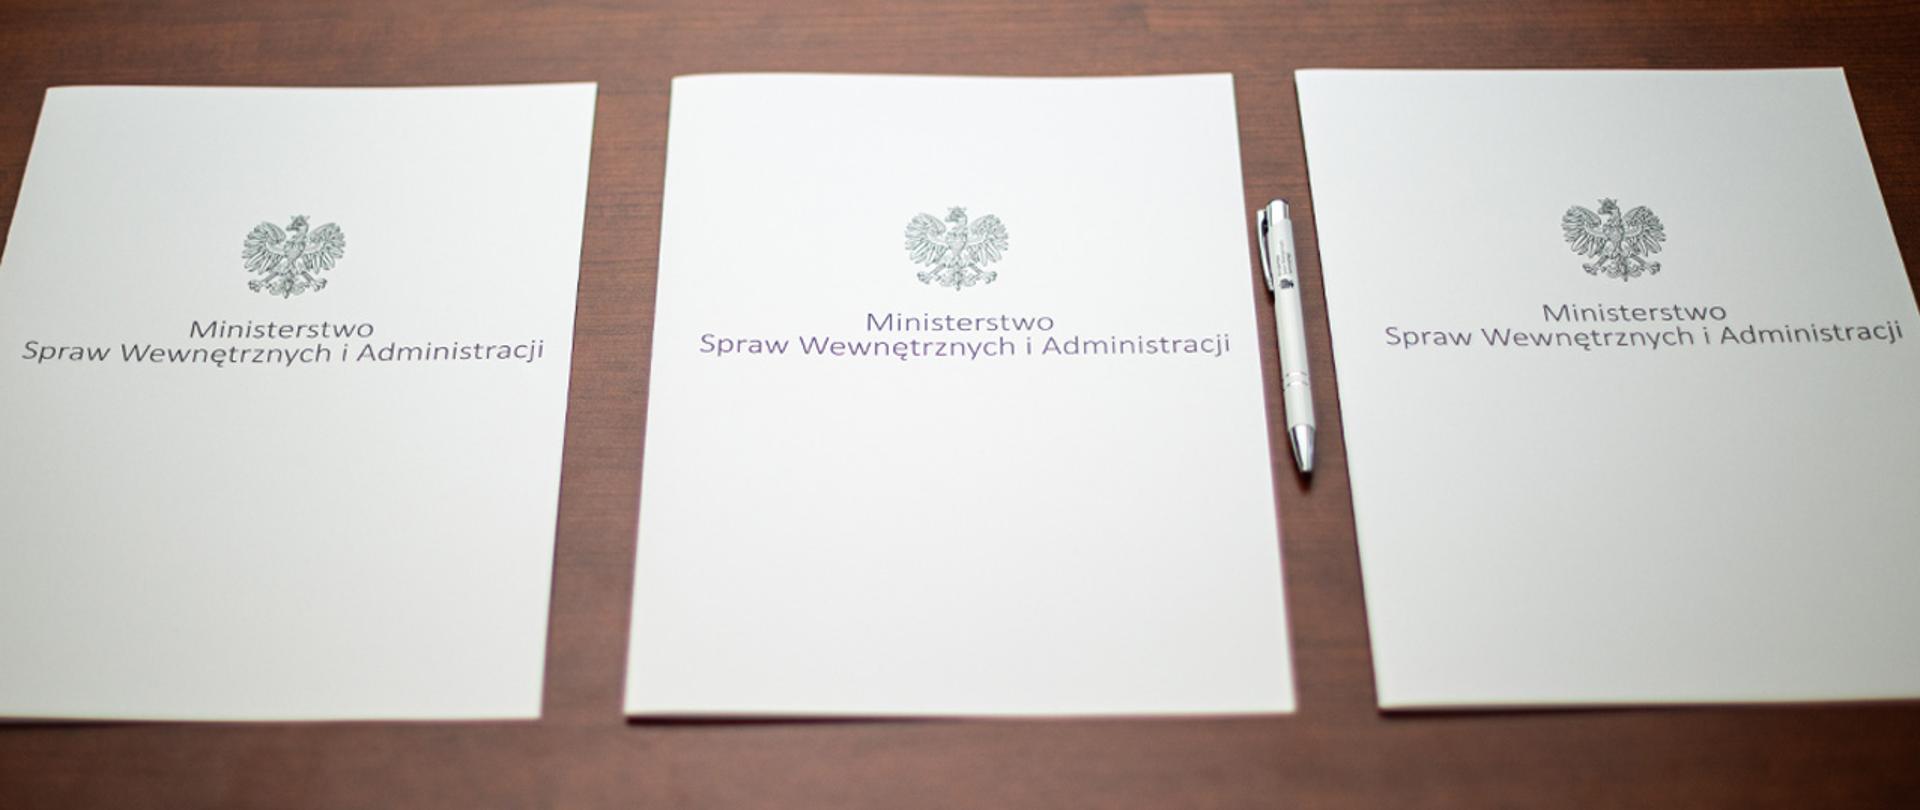 Na zdjęciu widać trzy leżące w rzędzie teczki na dokumenty z napisem "Ministerstwo Spraw Wewnętrznych i Administracji" i orłem z godła narodowego. Obok jednej z nich leży długopis MSWiA.